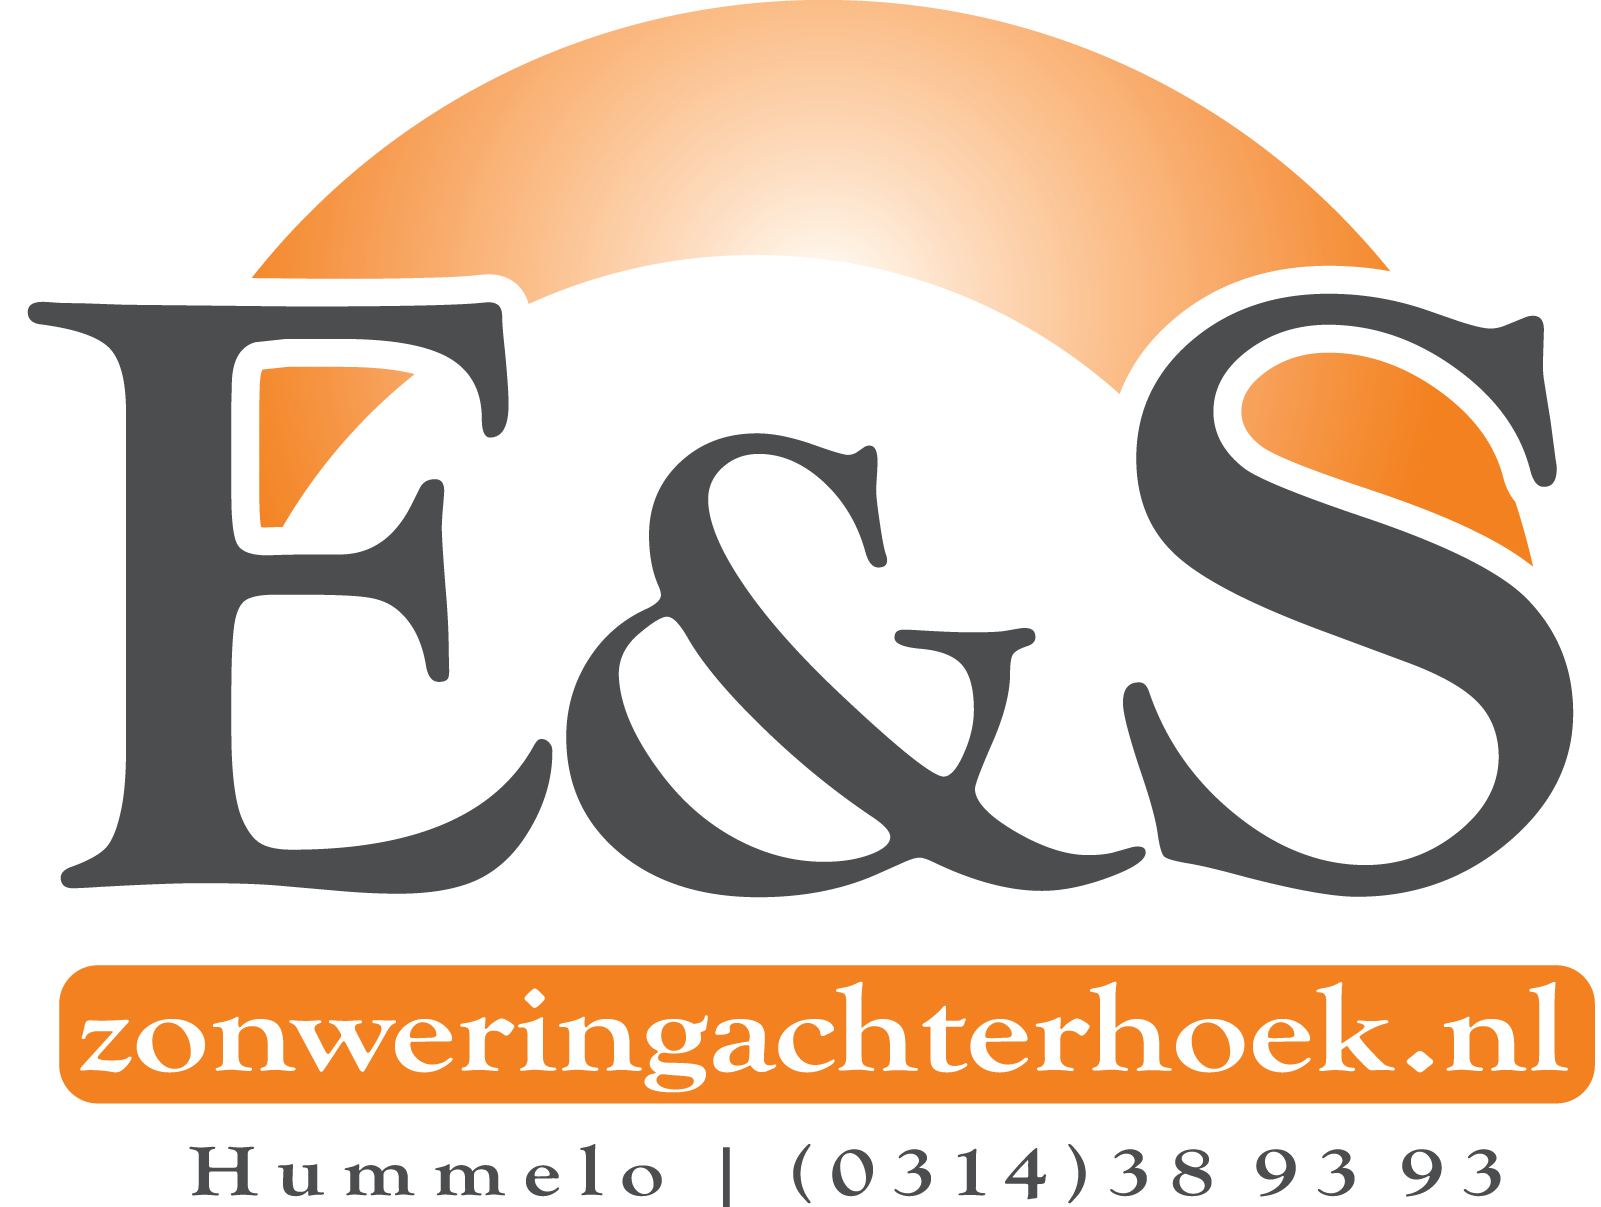 E&S_logo.png